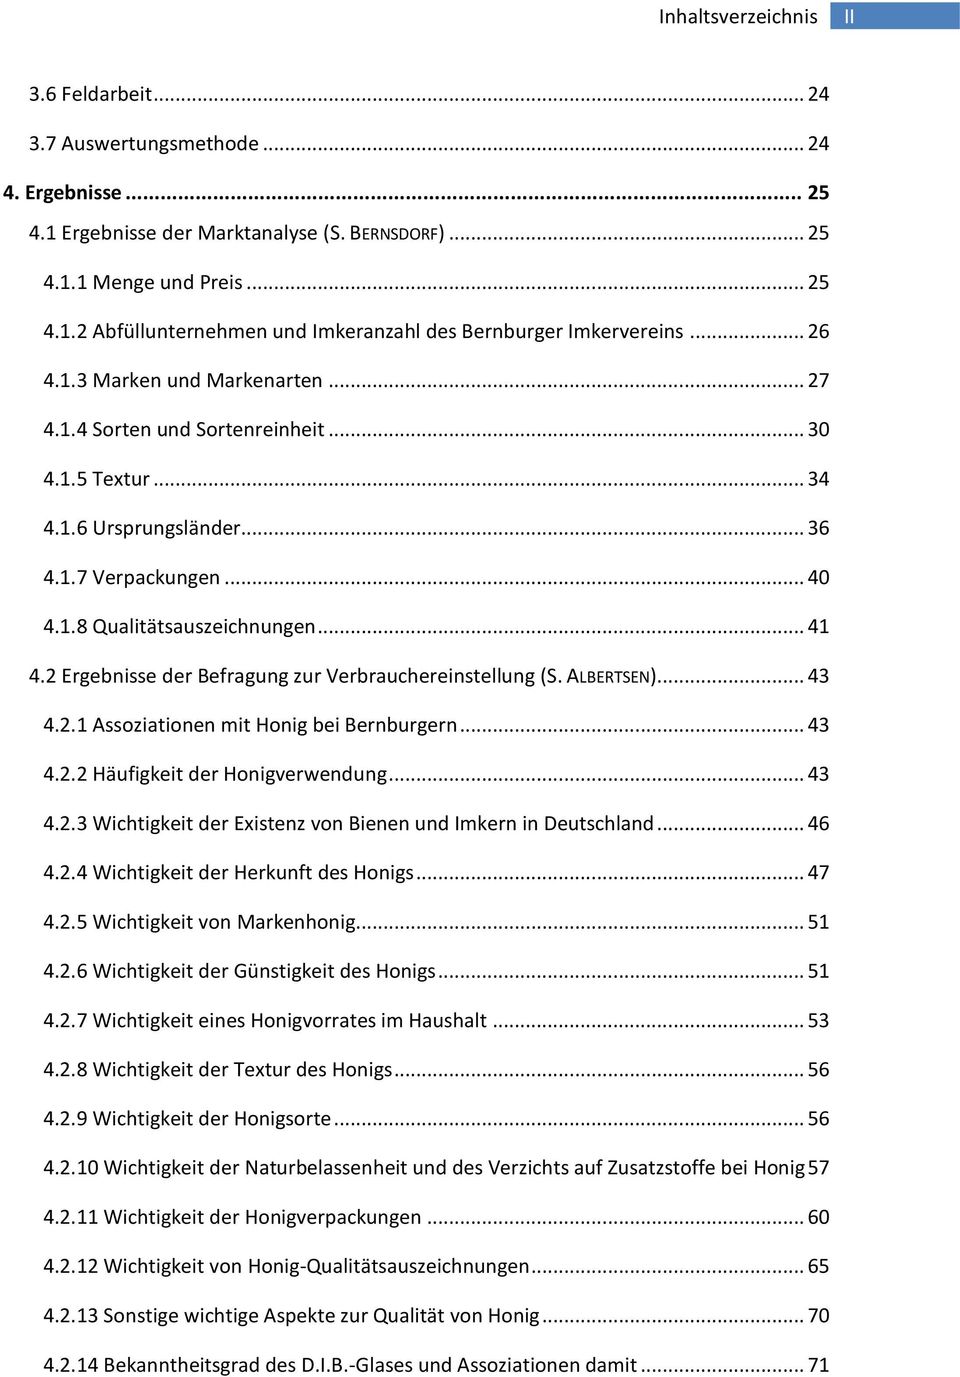 2 Ergebnisse der Befragung zur Verbrauchereinstellung (S. ALBERTSEN)... 43 4.2.1 Assoziationen mit Honig bei Bernburgern... 43 4.2.2 Häufigkeit der Honigverwendung... 43 4.2.3 Wichtigkeit der Existenz von Bienen und Imkern in Deutschland.